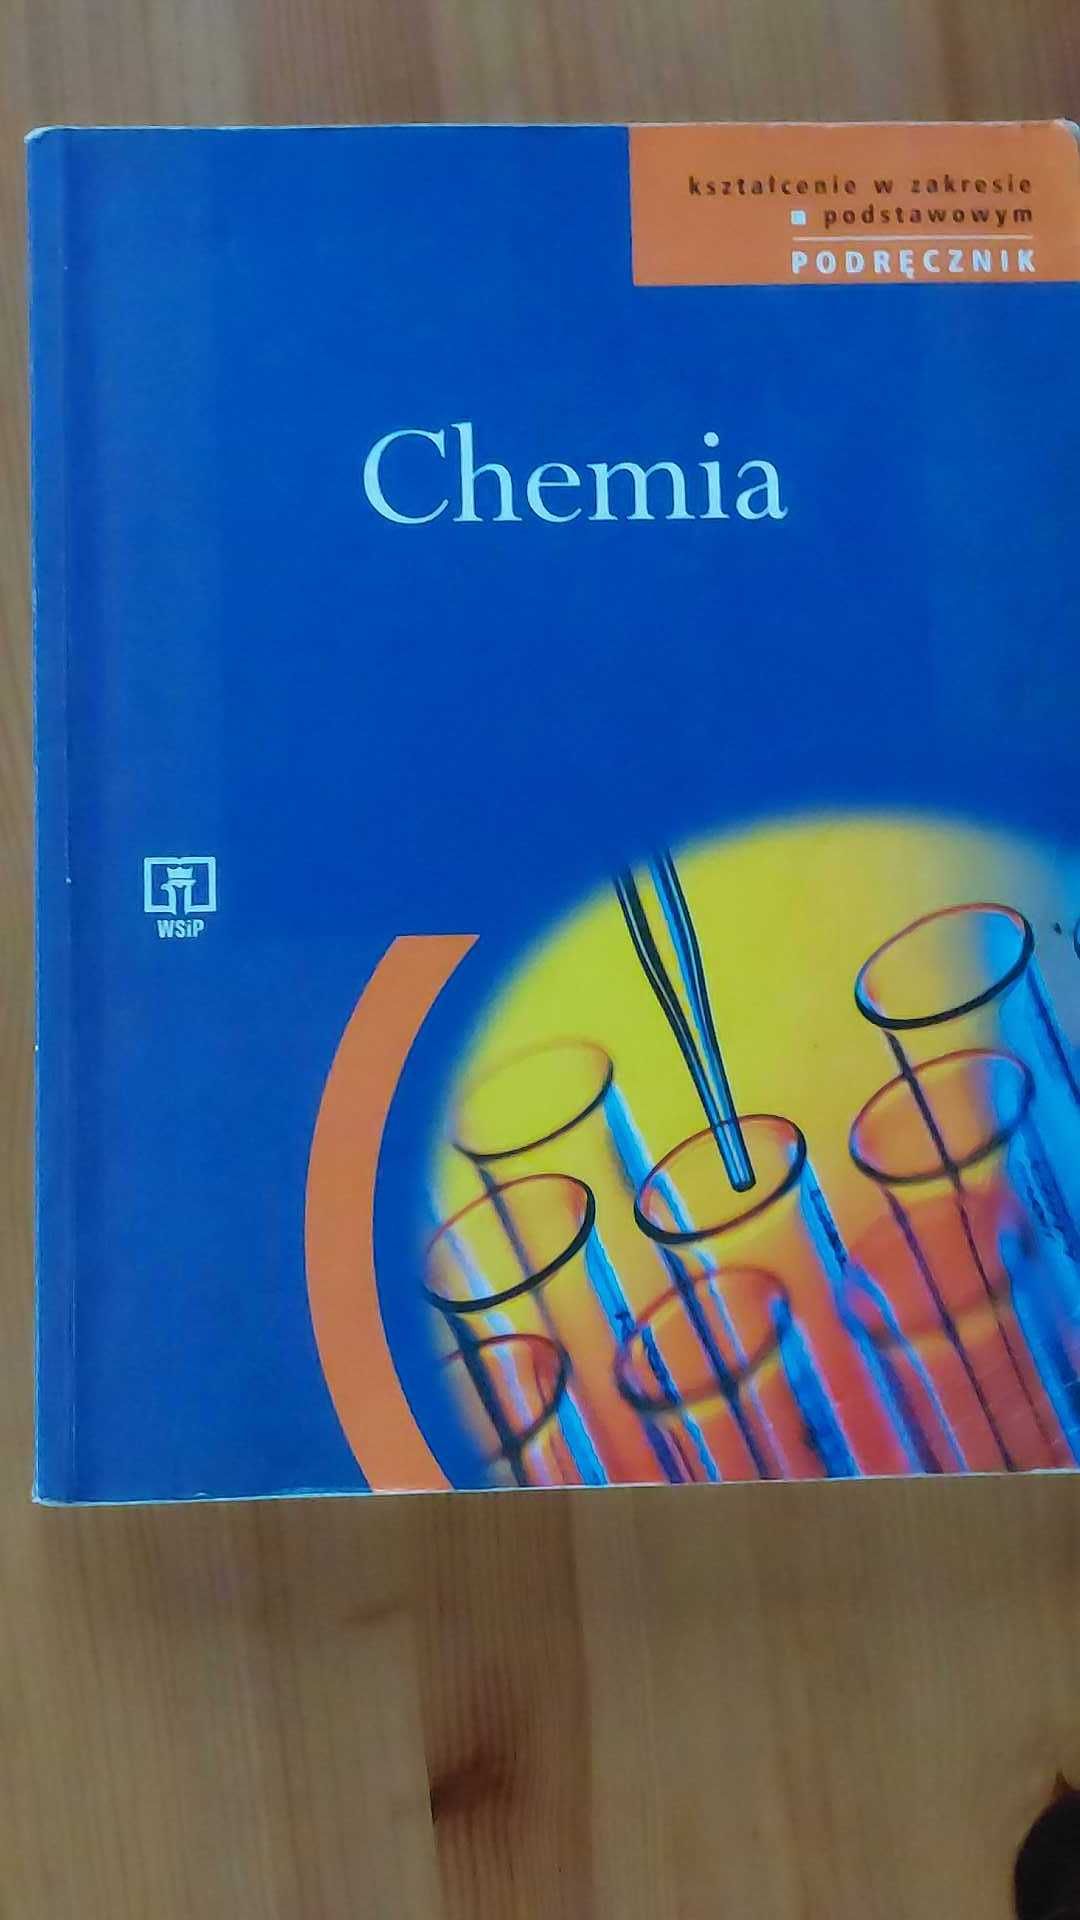 Podręcznik chemia - liceum - wyd. WSiP M. Poźniczek, Z. Kluz